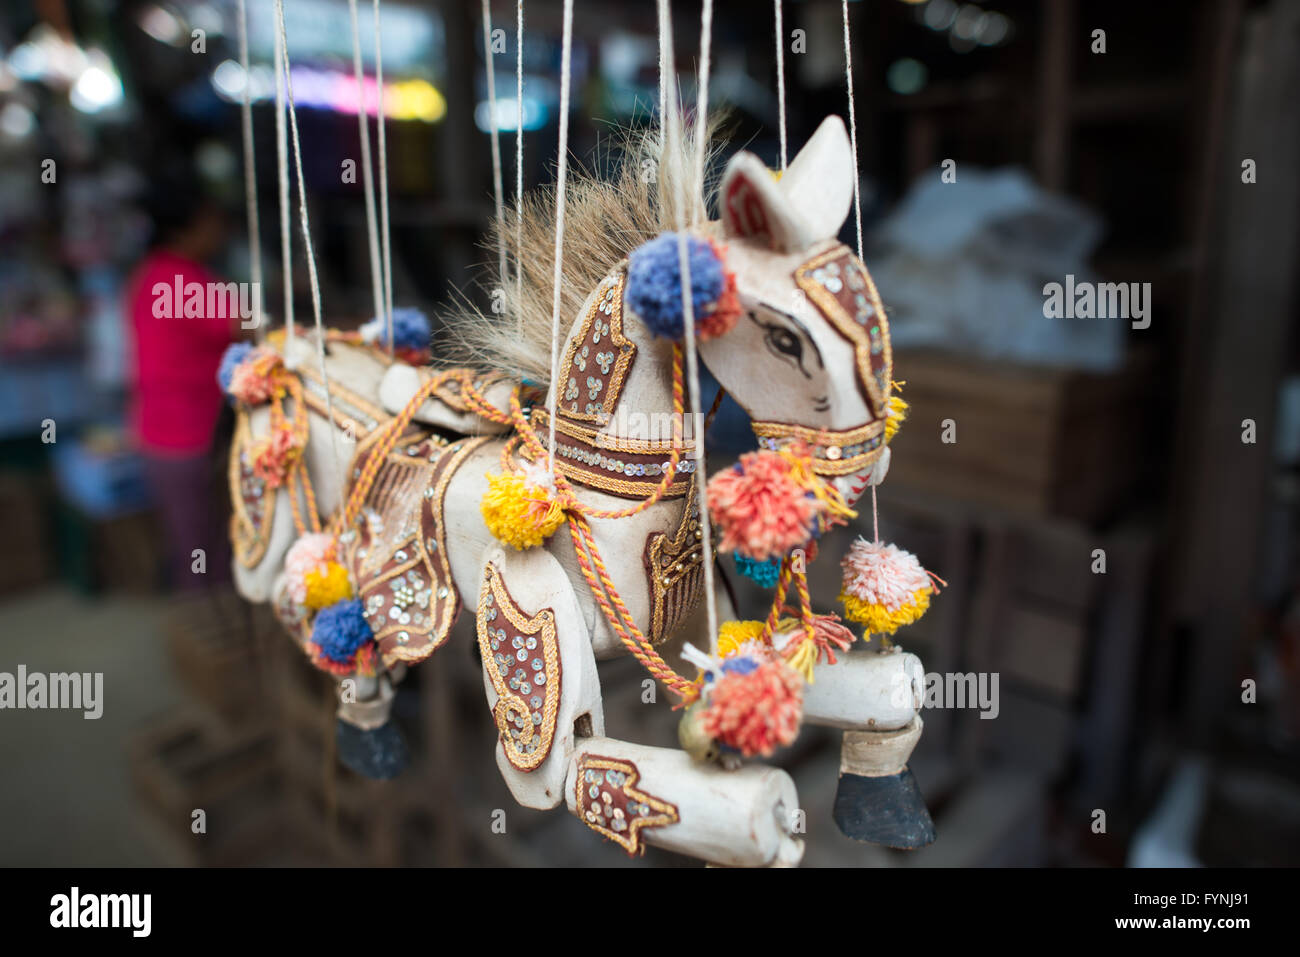 NYAUNG-U, Myanmar - una marionetta cavallo giocattolo in vendita a Nyaung-U Mercato, vicino a Bagan, Myanmar (Birmania). Il mercato è anche noto come Mani Sithu mercato. Foto Stock